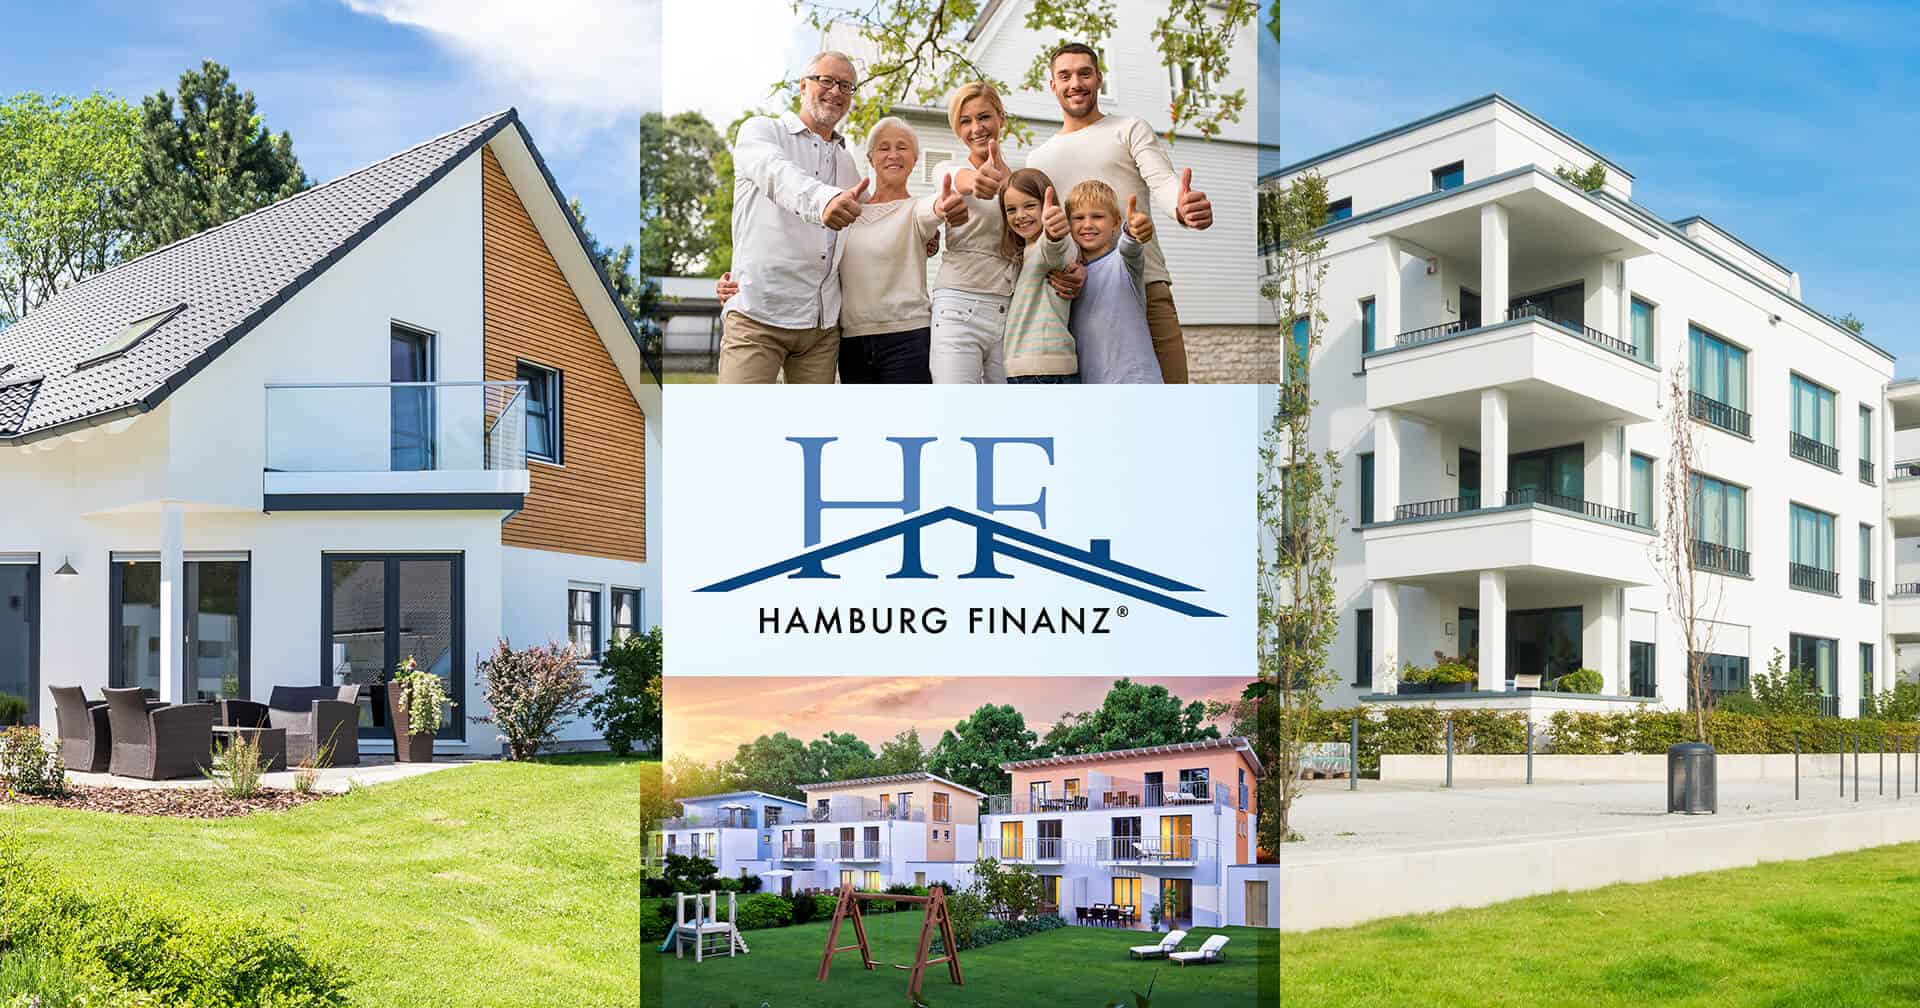 Eigenheim Blog Hamburg Finanz